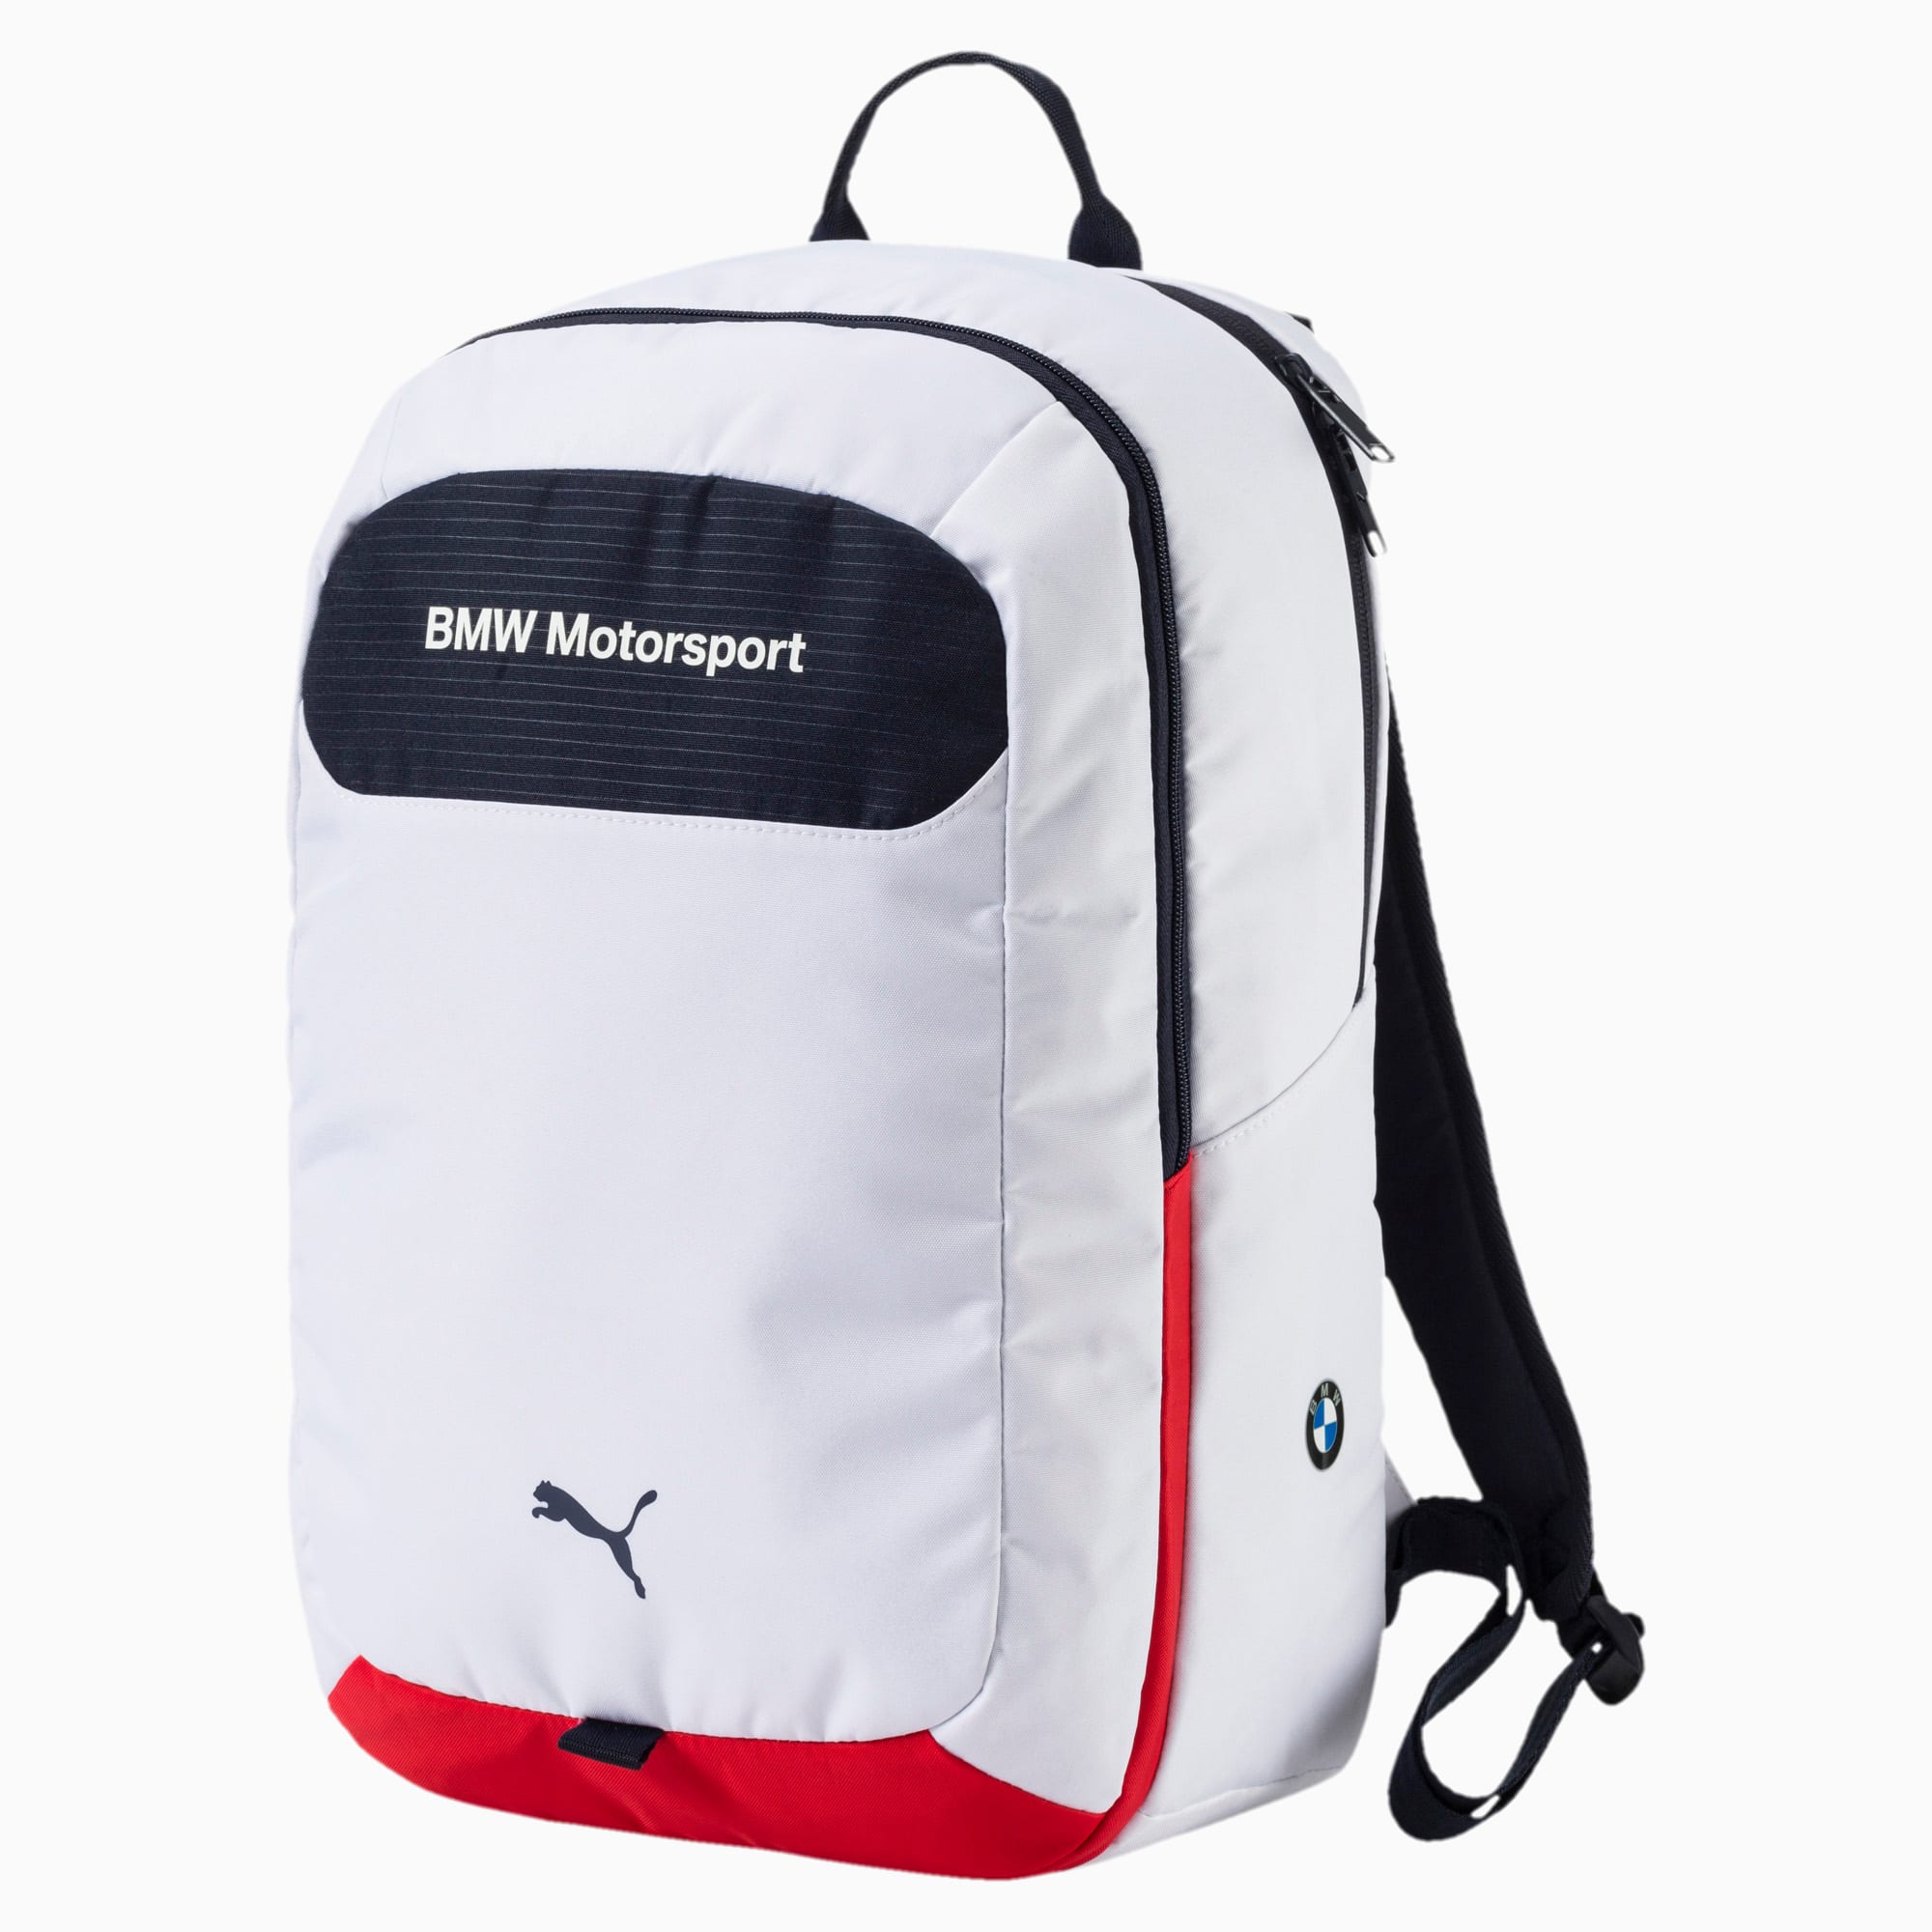 bmw motorsport backpack